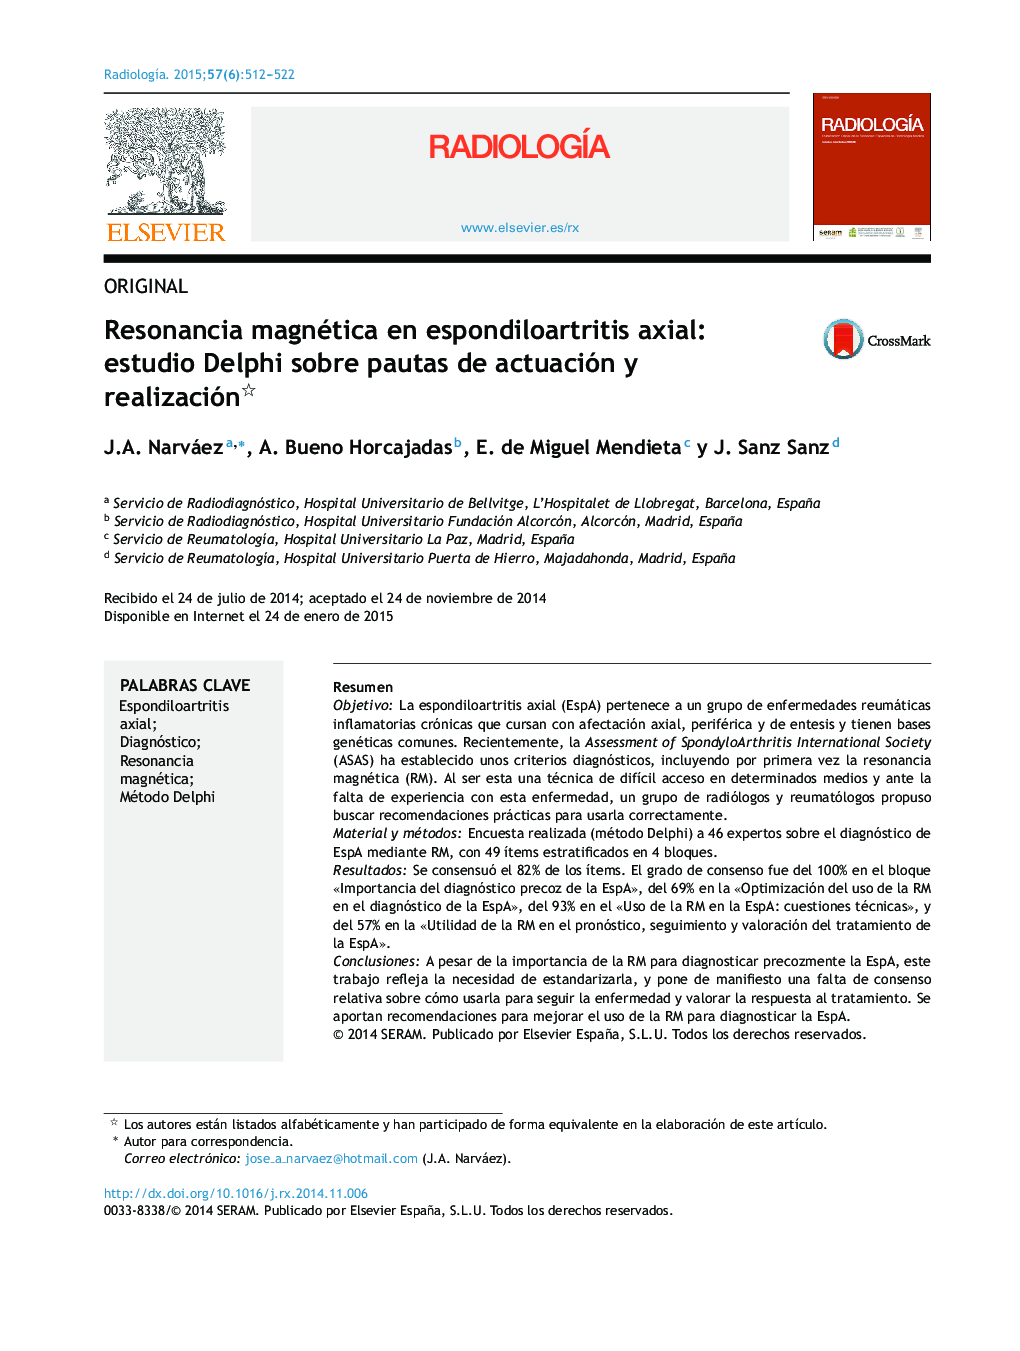 Resonancia magnética en espondiloartritis axial: estudio Delphi sobre pautas de actuación y realización 